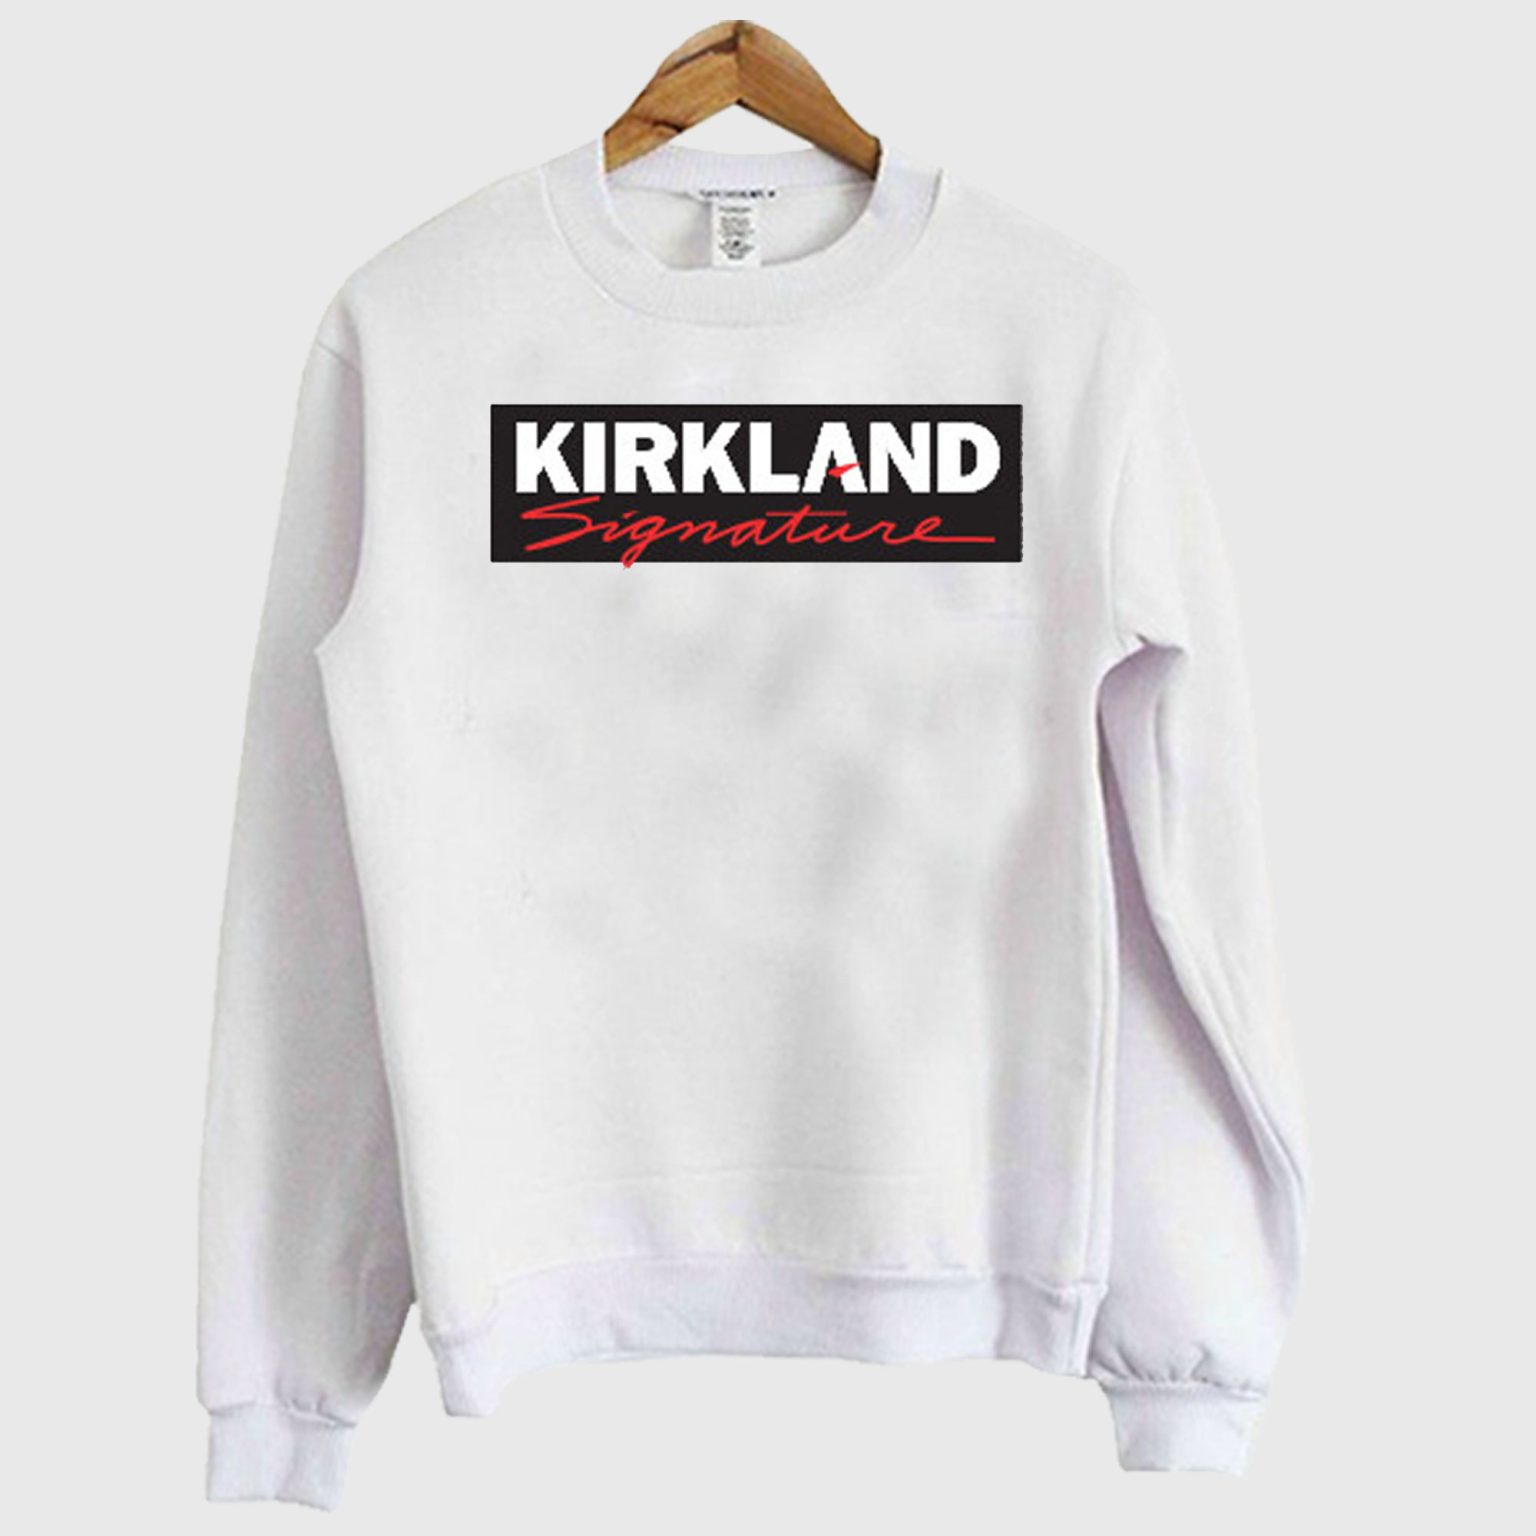 kirkland signature sweatshirt